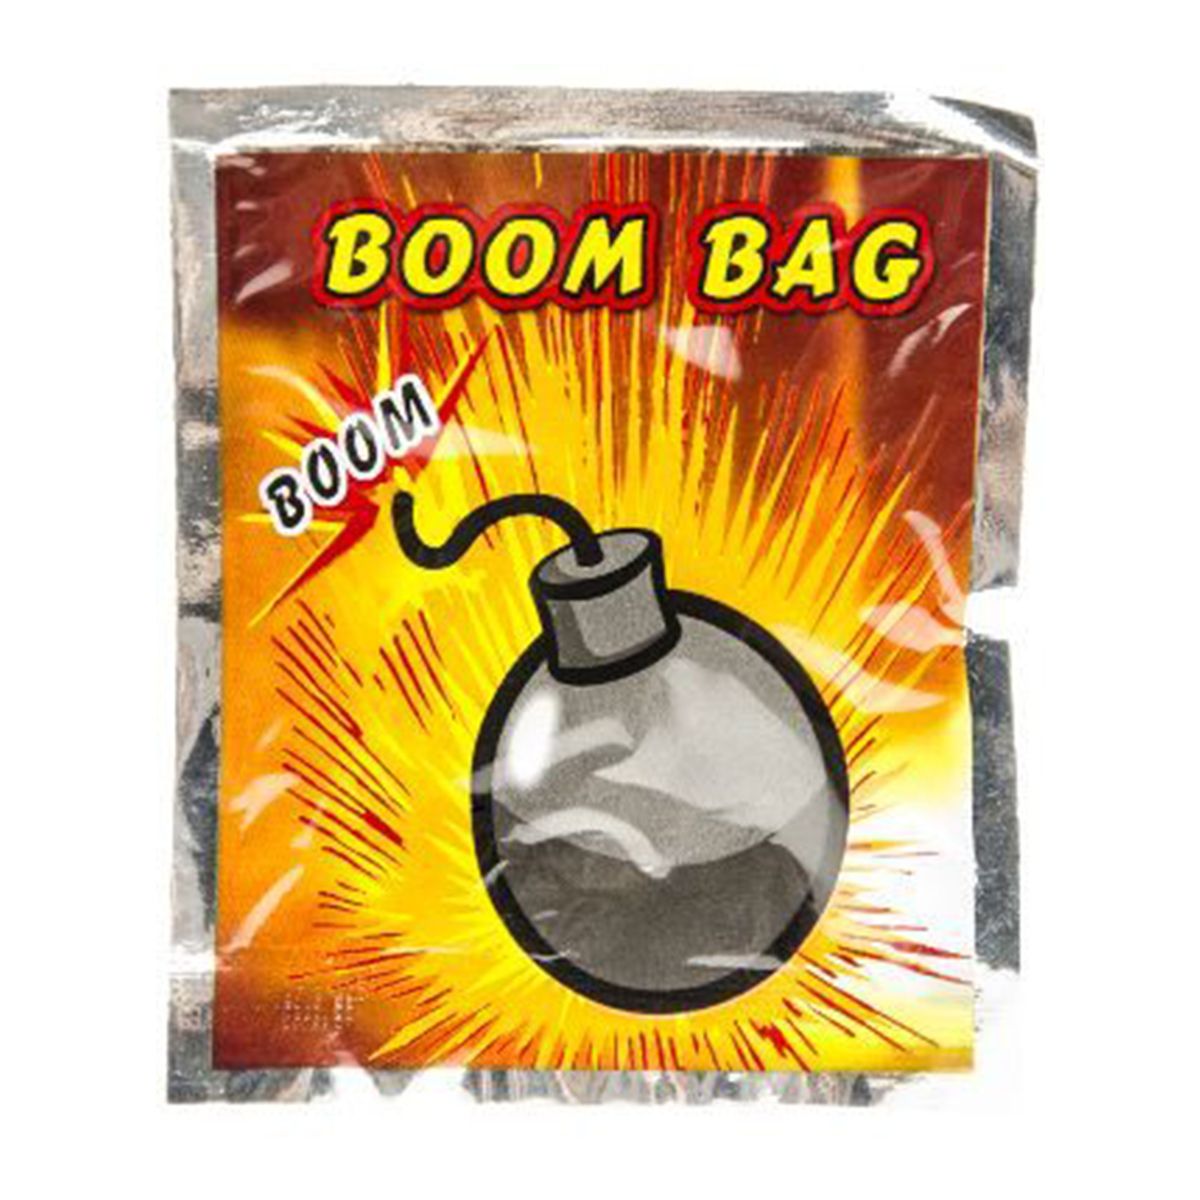 Mitgebsel für Kindergeburtstag 40 x Handgranaten Knalltaschen Bomb Bag 